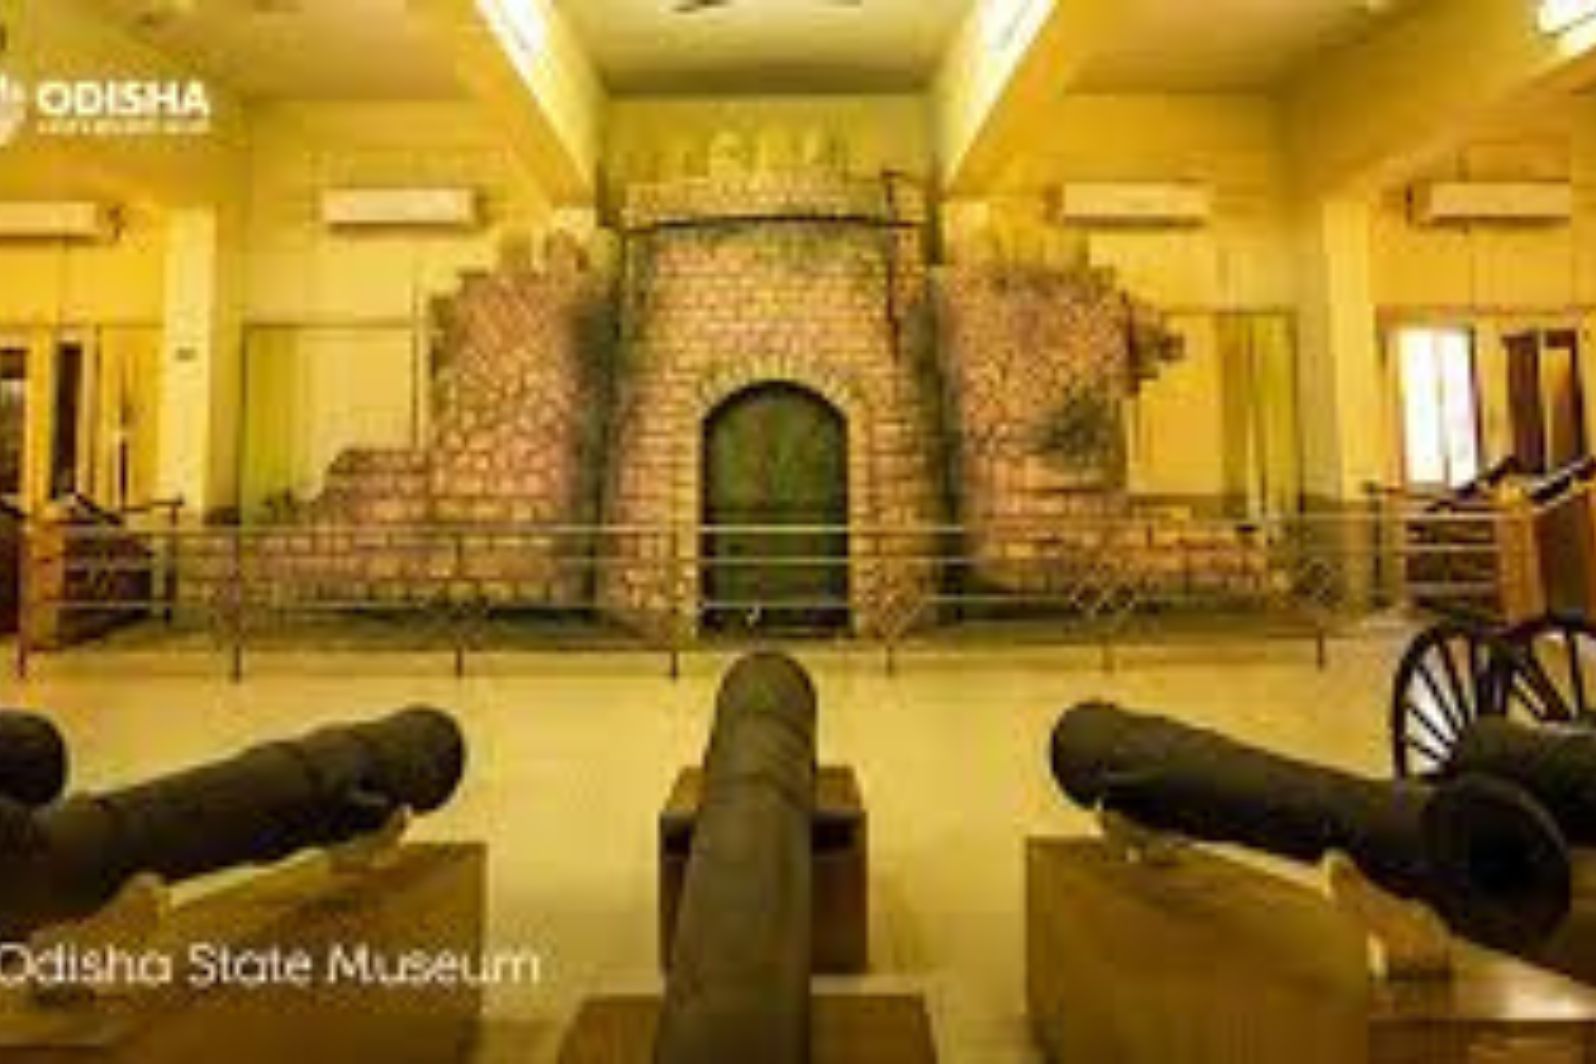 odisha state museum Bhubaneswar